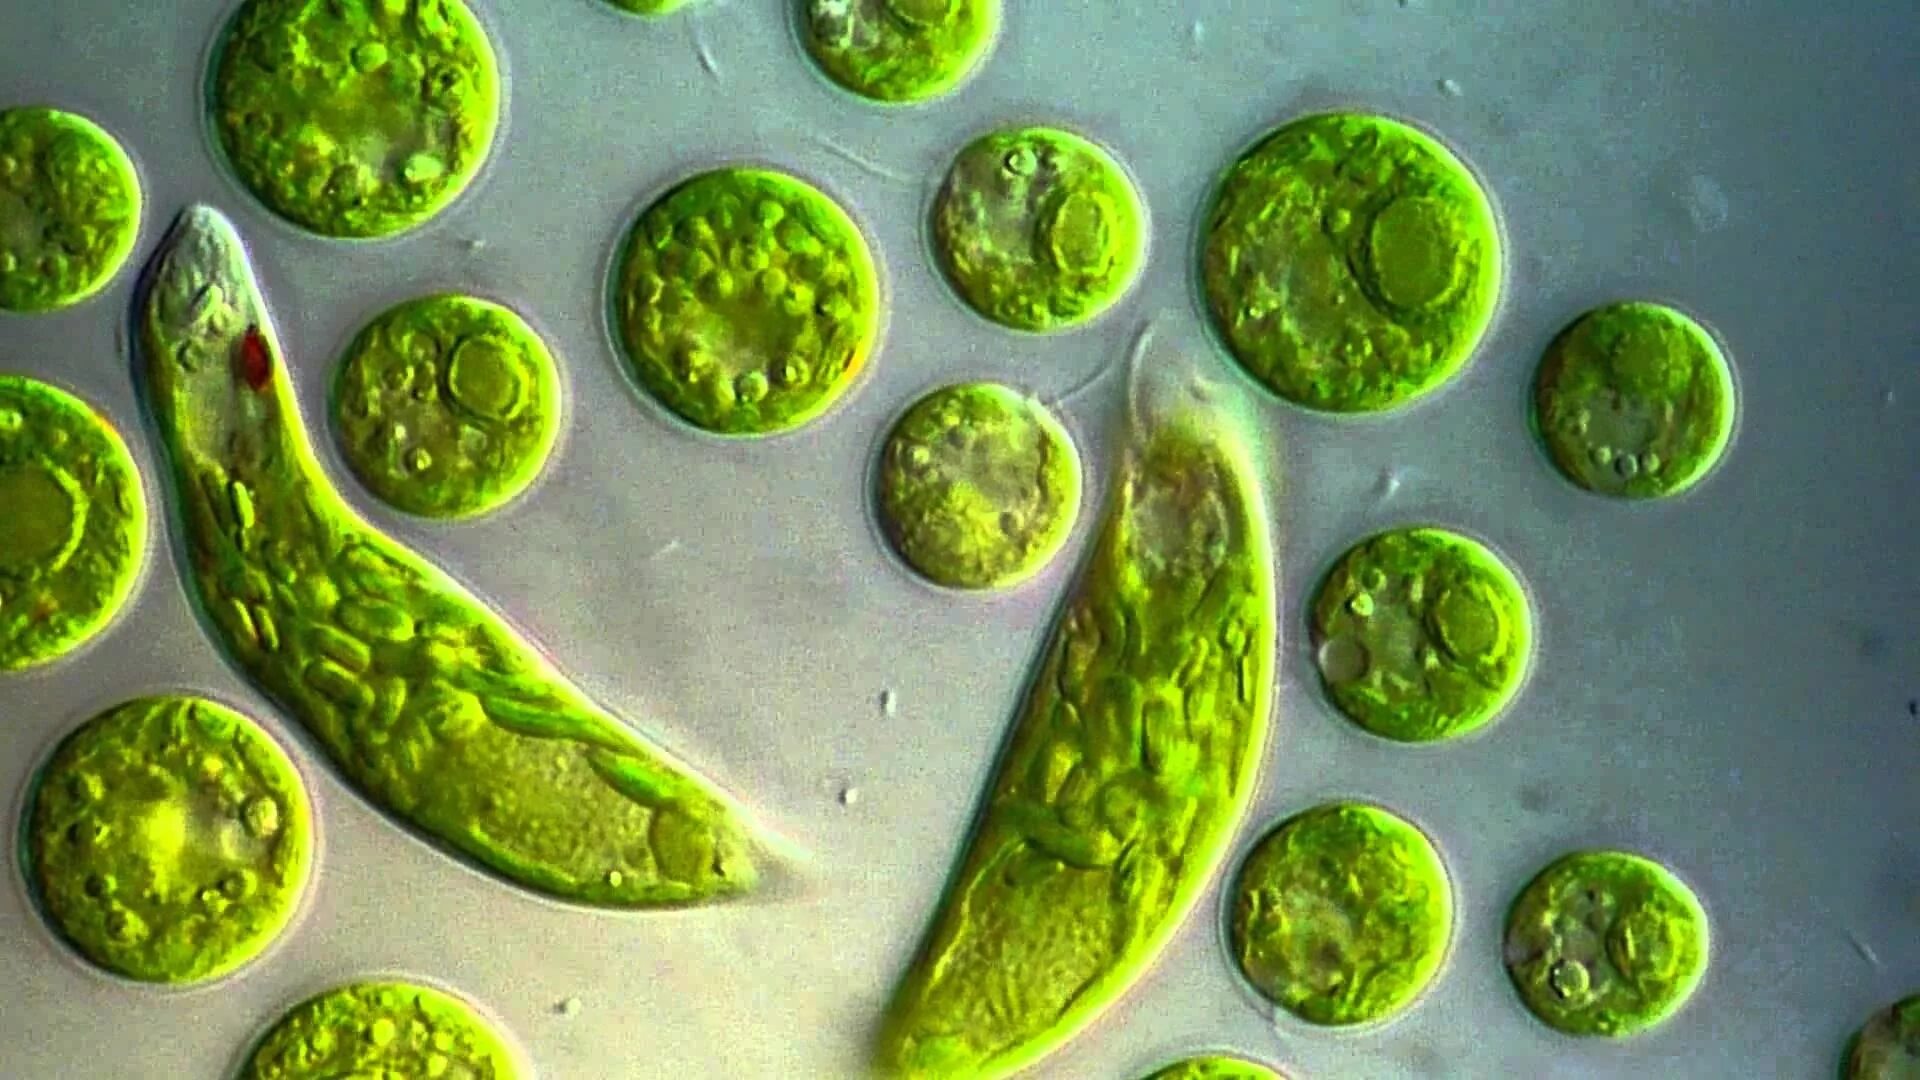 Известно что хламидомонада одноклеточная фотосинтезирующая зеленая водоросль. Эвглена зеленая. Жгутиконосцы эвглена. Одноклеточные водоросли эвглена зеленая. Эвгленовые (Euglena, trachelomonas),.